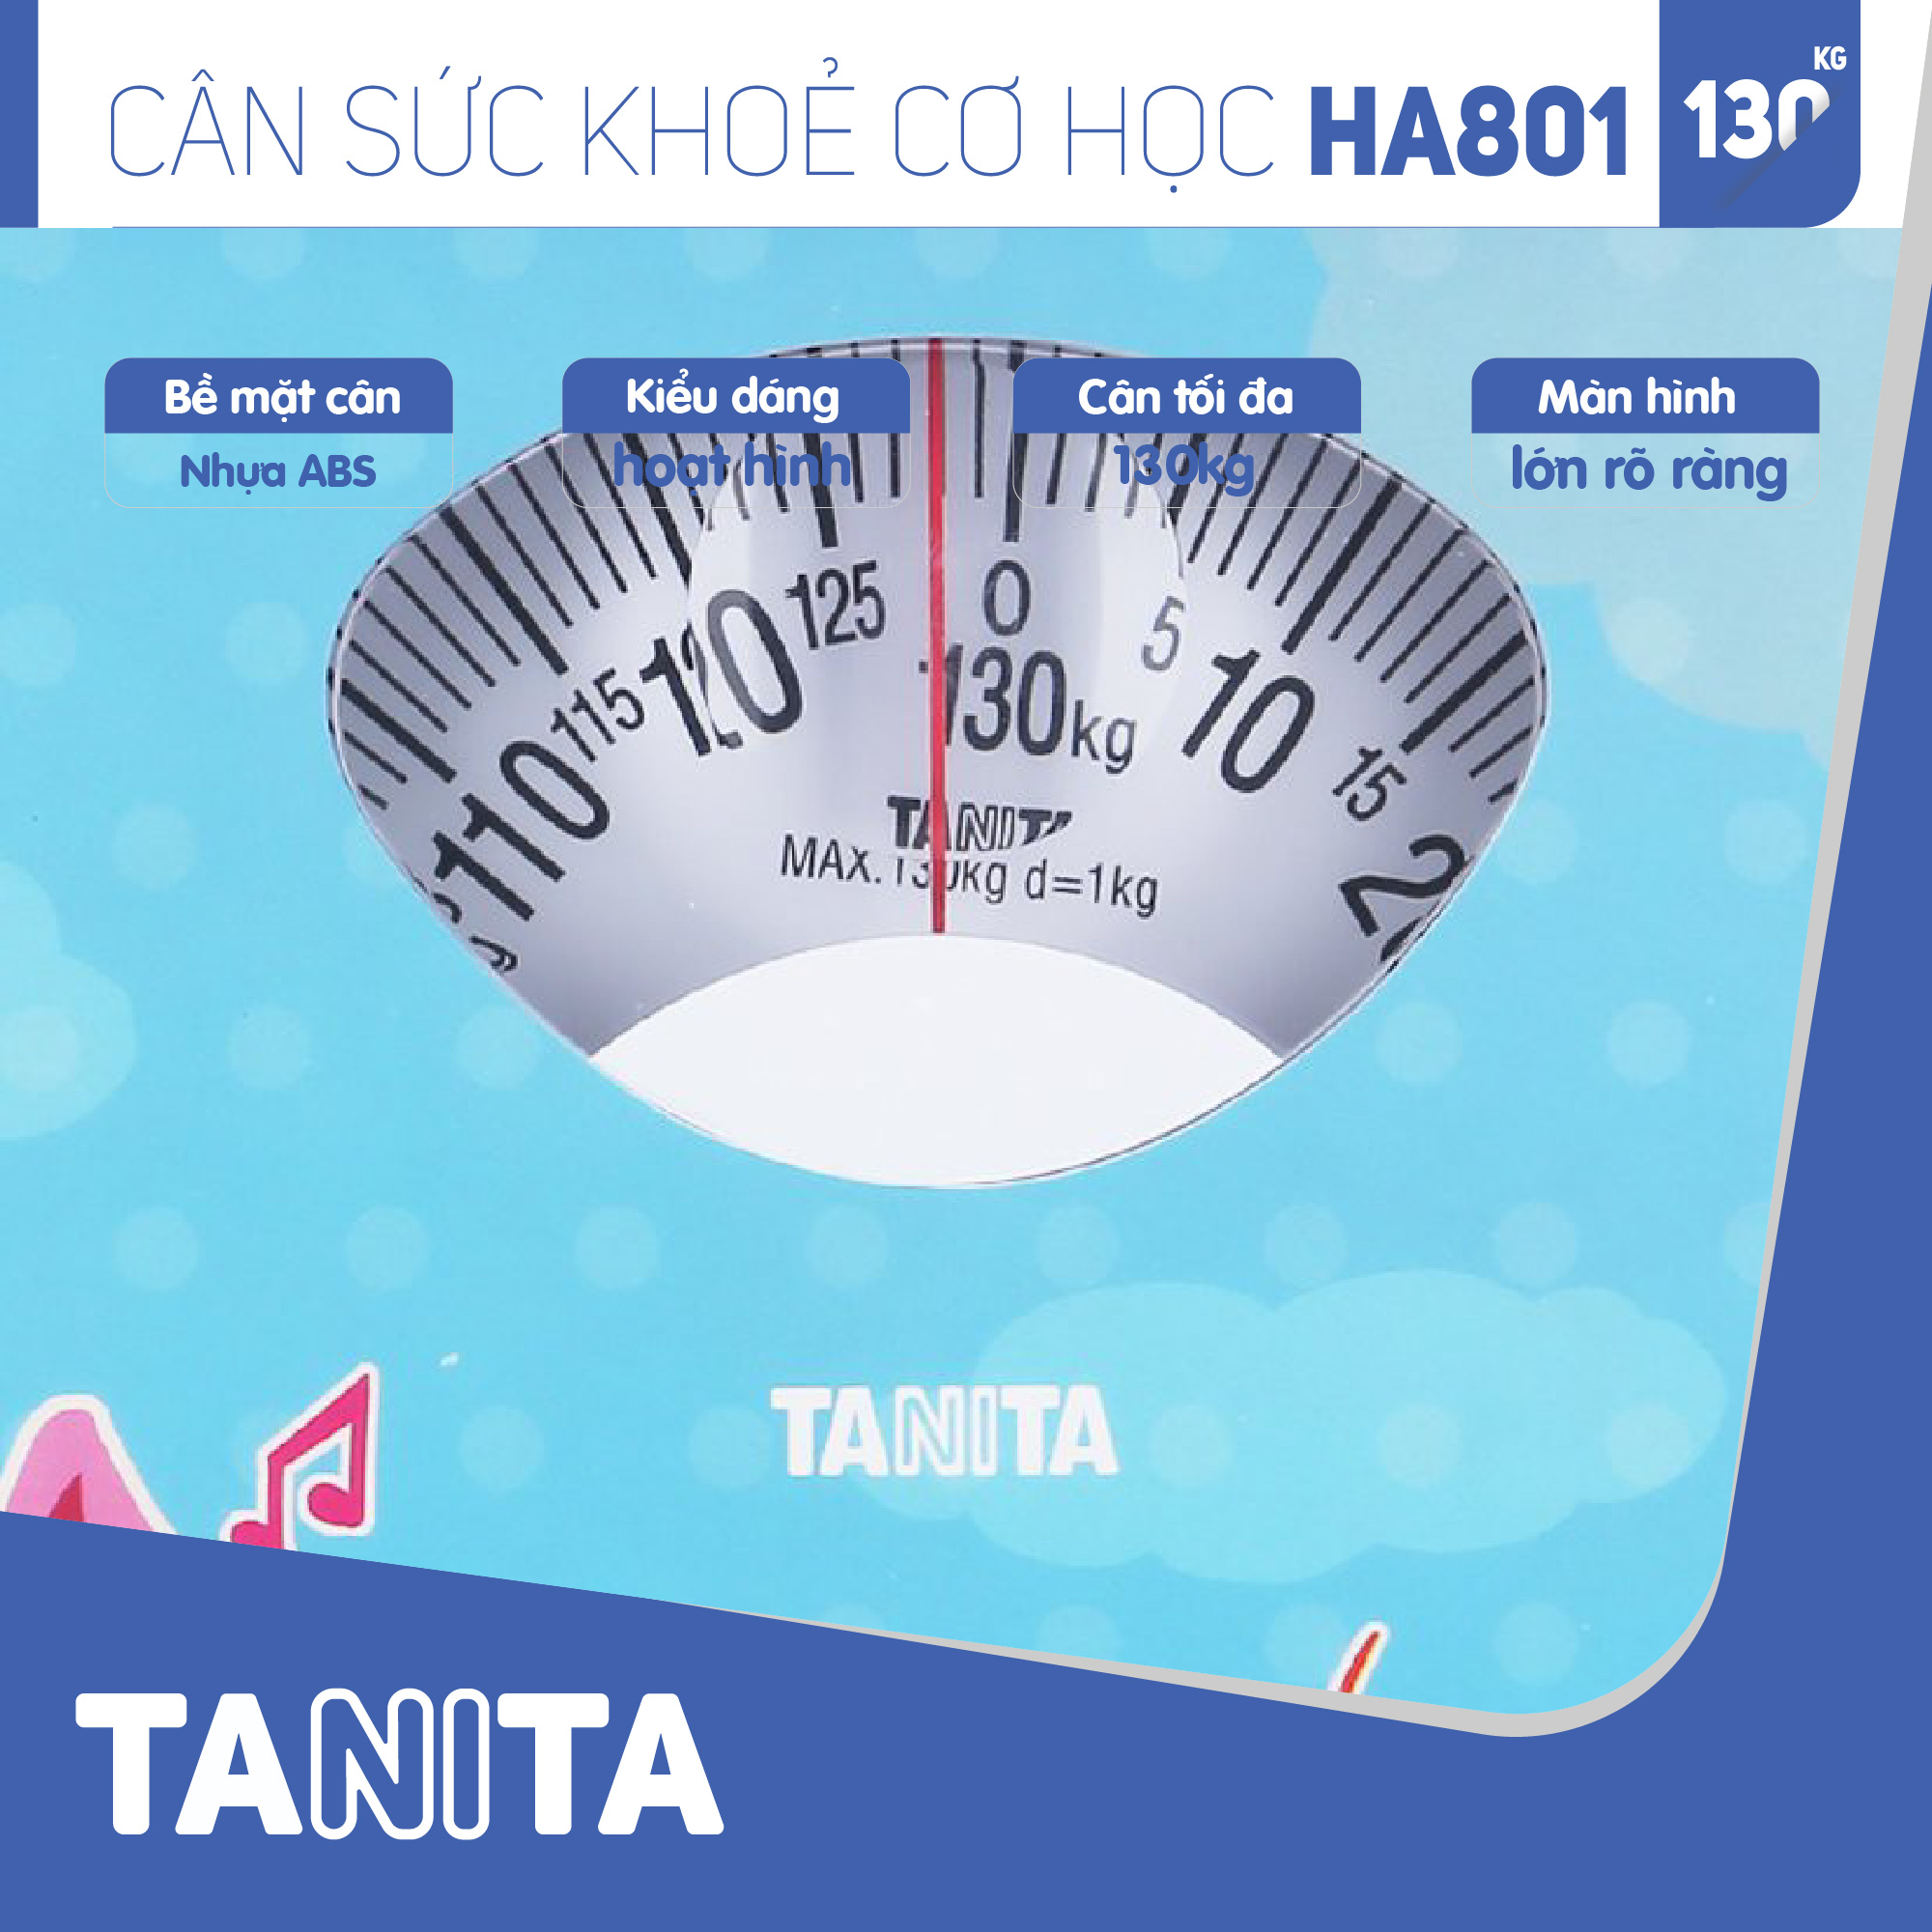 Cân sức khoẻ cơ học Tanita HA801 Nhật Bản Tanita, chính hãng nhật bản,cân cơ học,cân chính hãng,cân nhật bản,cân sức khoẻ y tế,cân sức khoẻ gia đình,cân sức khoẻ cao cấp,cân 120kg,cân 130kg, Cân sức khoẻ mini (HÌNH ĐỘNG VẬT NGỘ NGHĨNH)